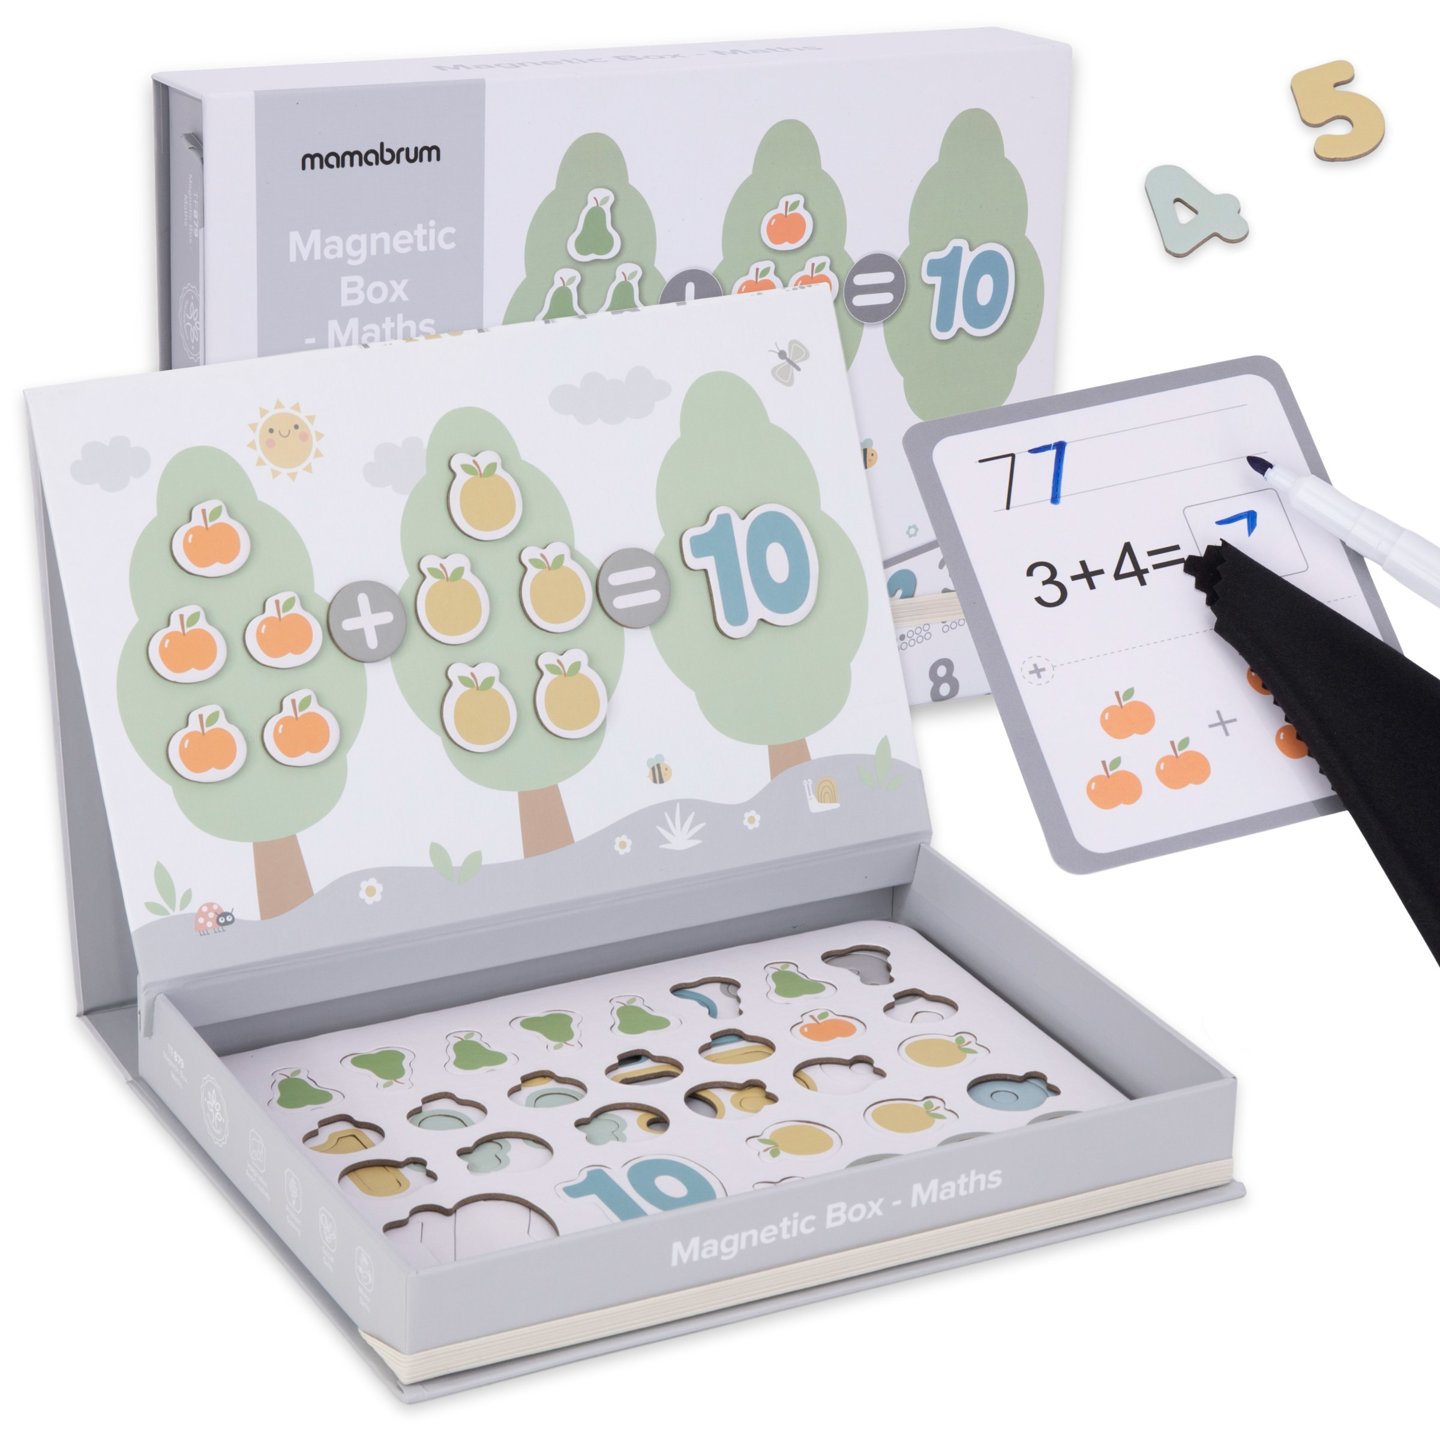 Puzzle magnetic de matematică - Cutie educațională - Numere și numărătoare pentru învățare